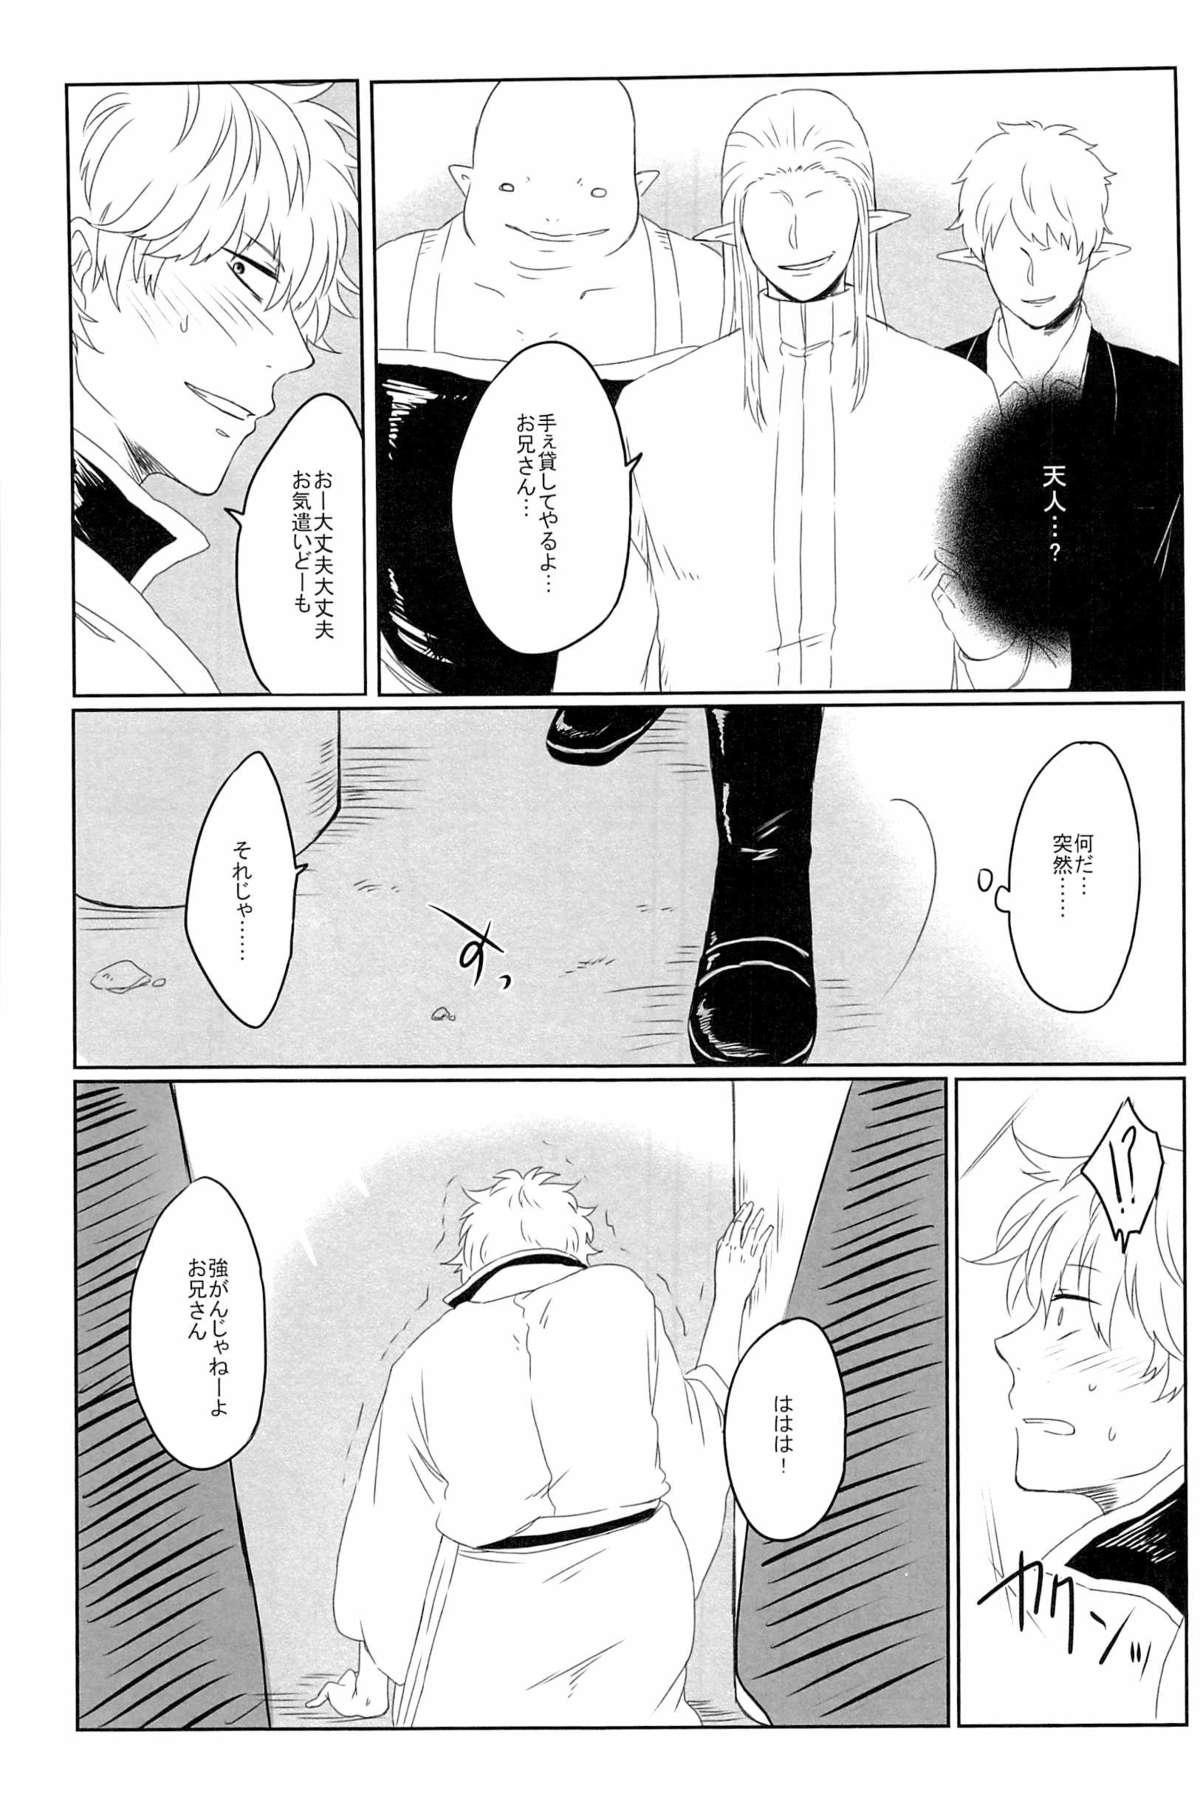 Teensex 性拷問 - Gintama Mallu - Page 7